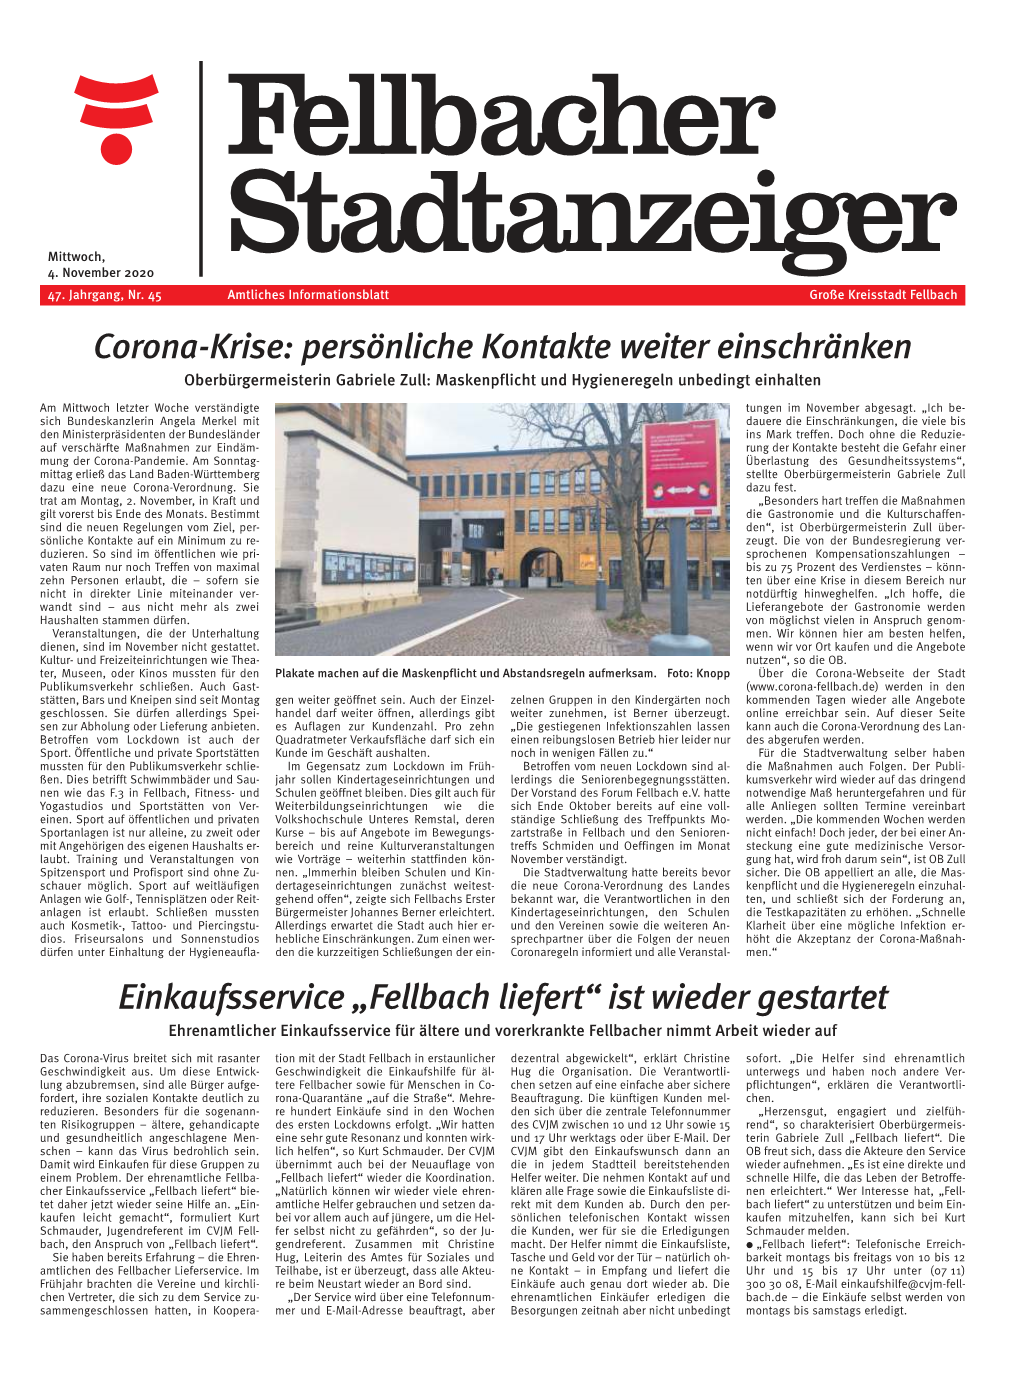 Der Fellbacher Stadtanzeiger KW45, 2020